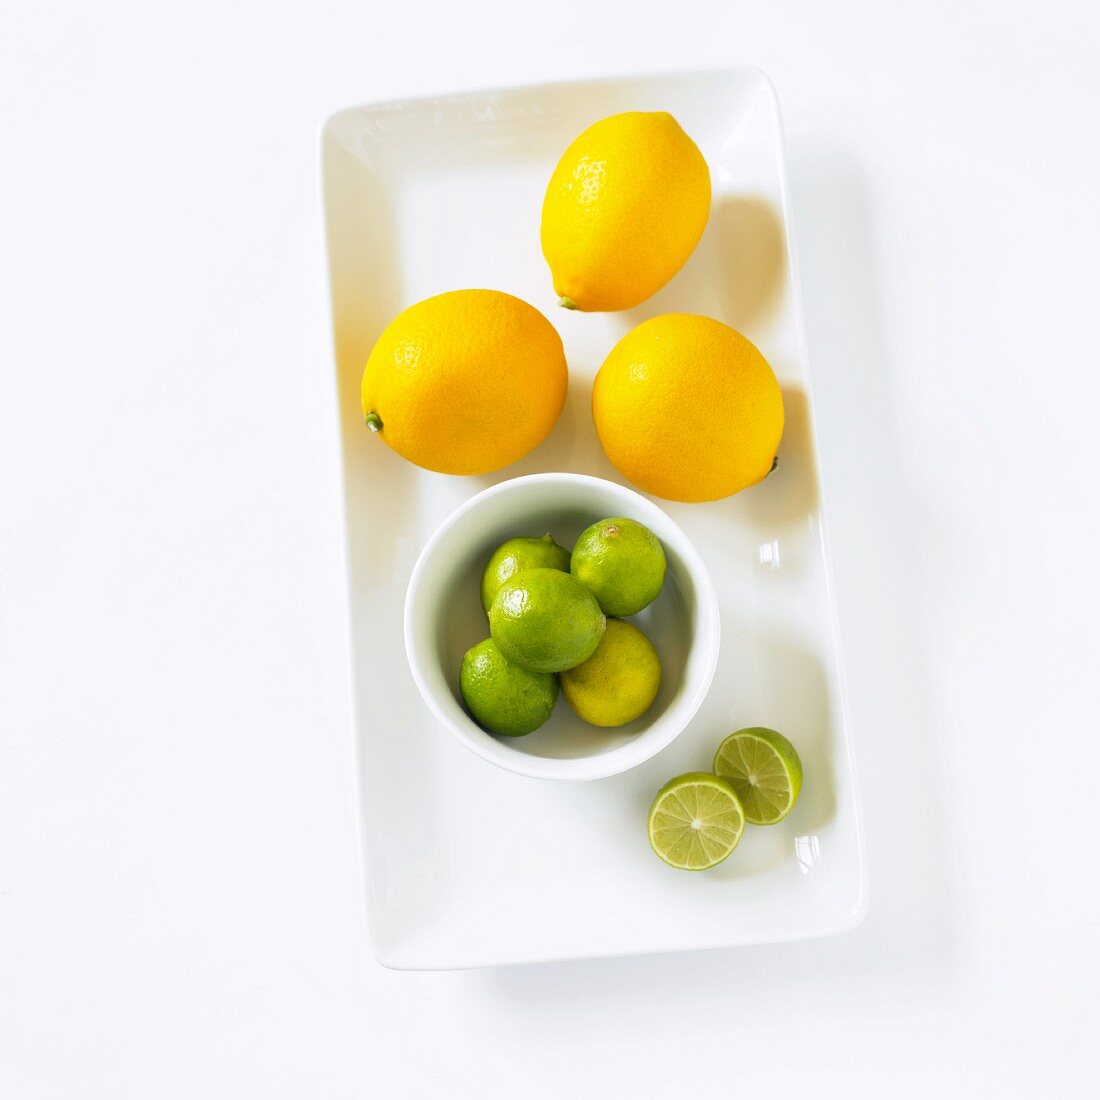 Meyer Lemons & Limetten auf Servierplatte (Aufsicht)